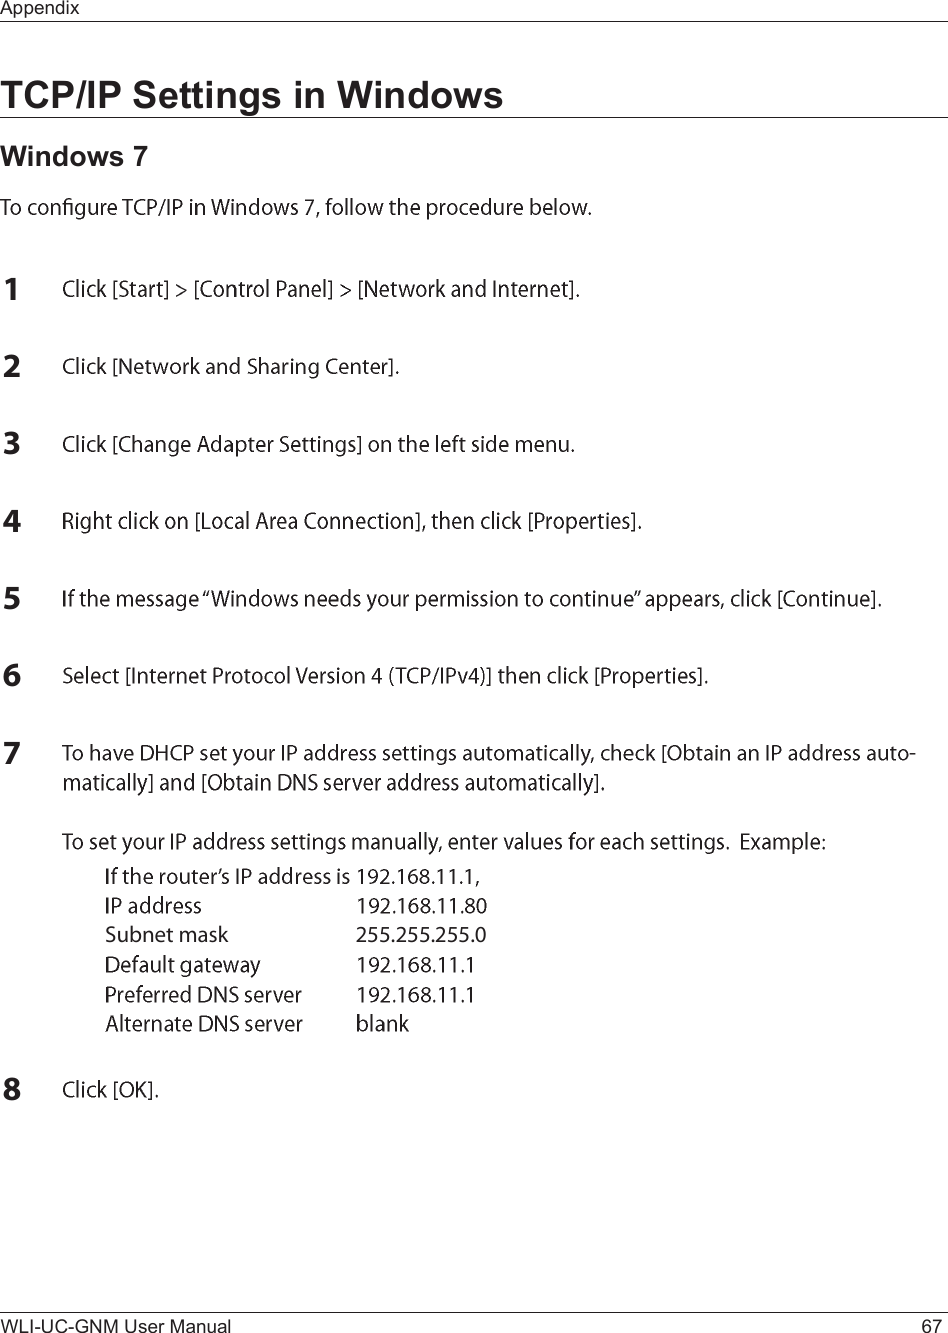 AppendixWLI-UC-GNM User Manual 67TCP/IP Settings in WindowsWindows 7ïîíìëêéóÍ«¾²»¬ ³¿-µ îëëòîëëòîëëòðè